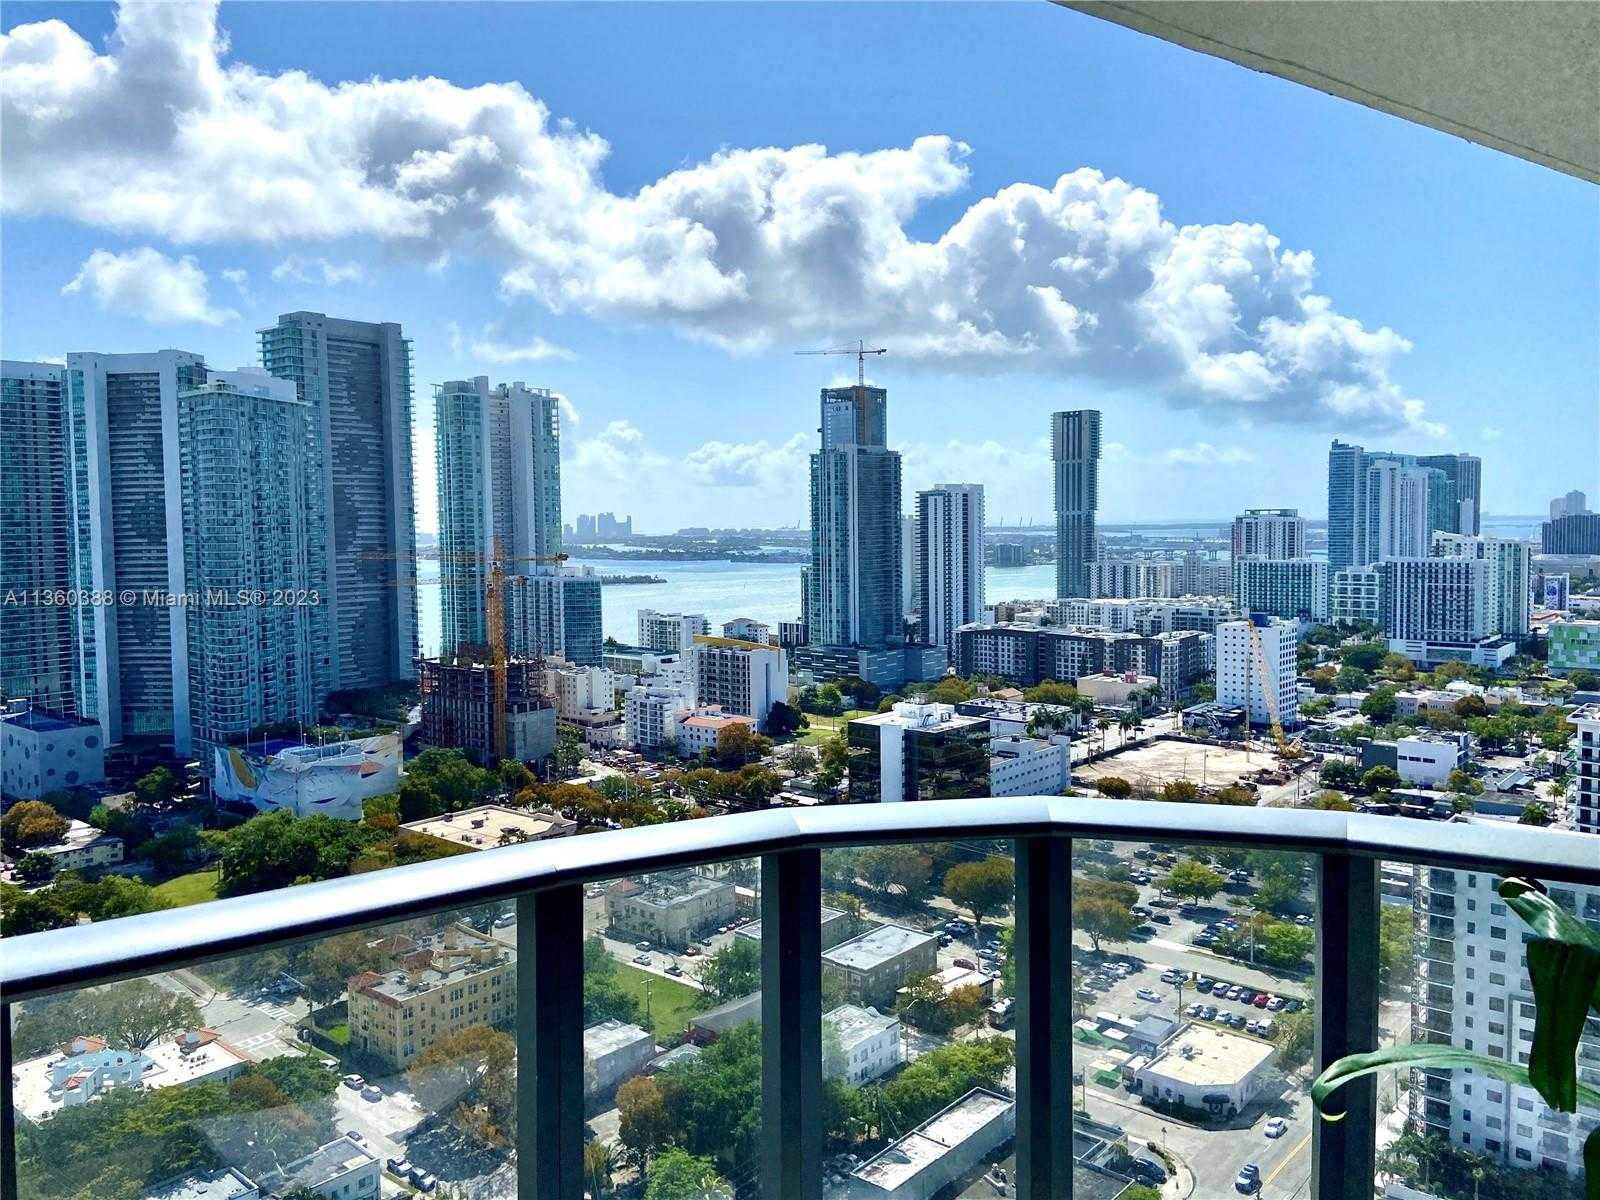 View Miami, FL 33137 condo